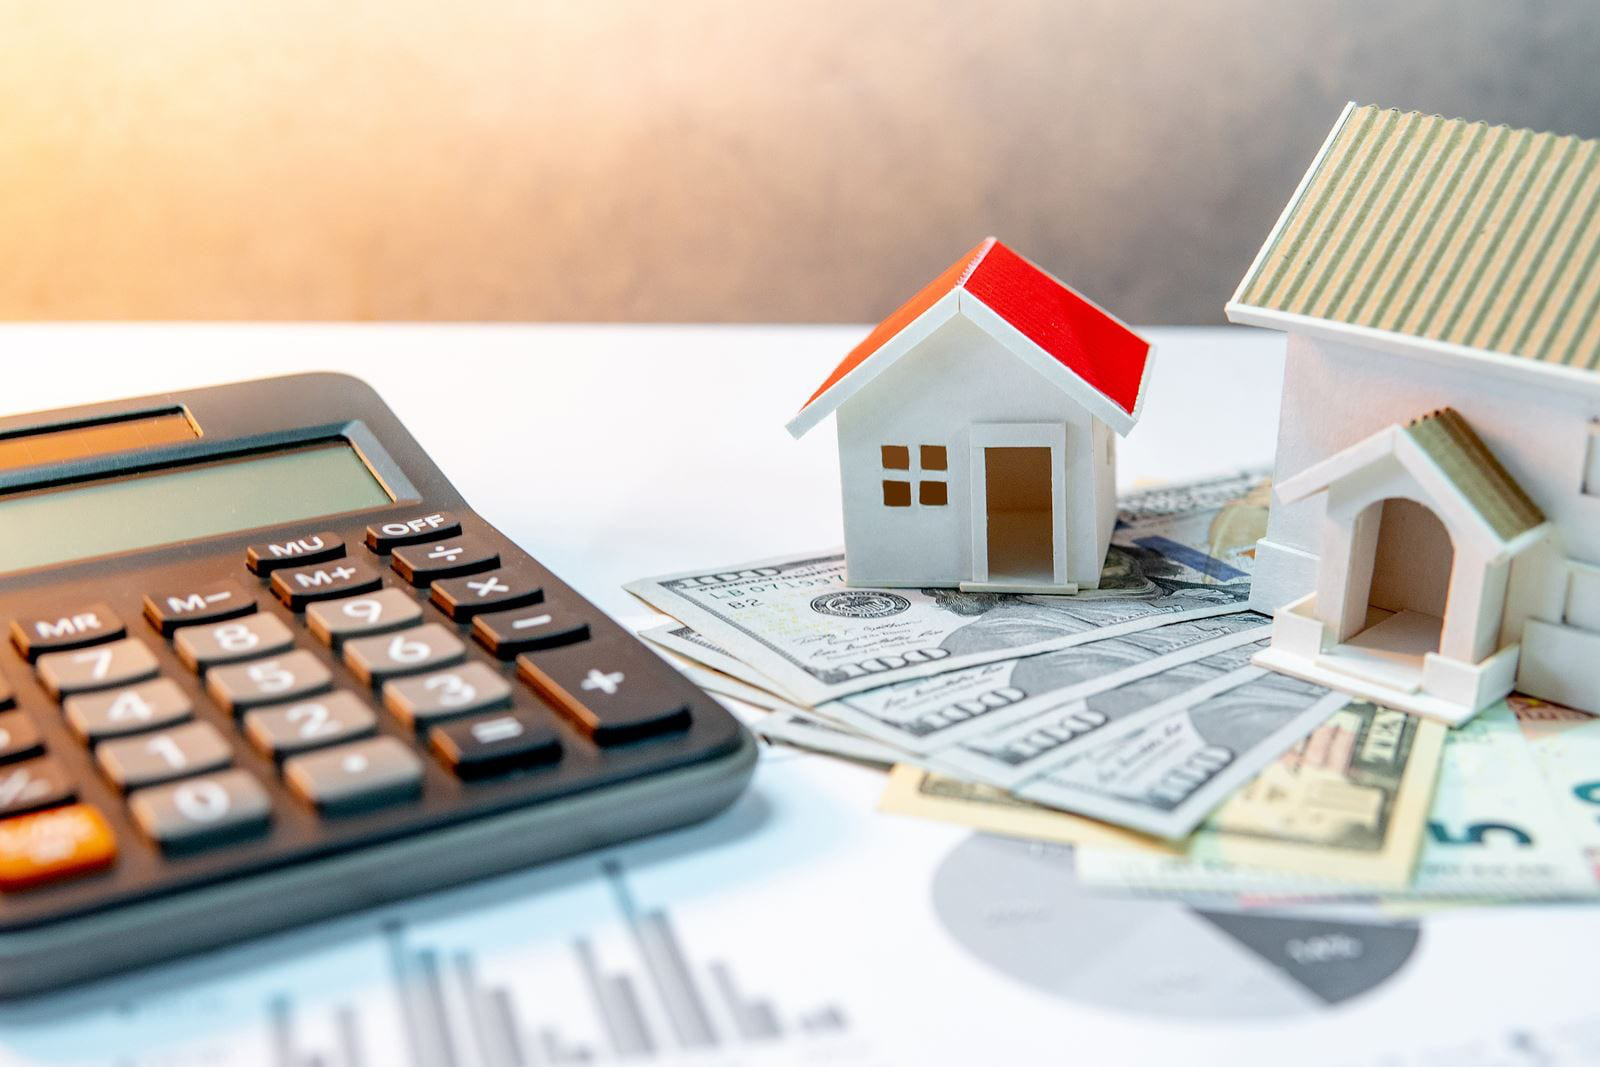 hình ảnh mô hình ngôi nhà ngói đỏ, máy tính cầm tay, tiền minh họa cho lãi suất vay mua nhà tháng 3/2021